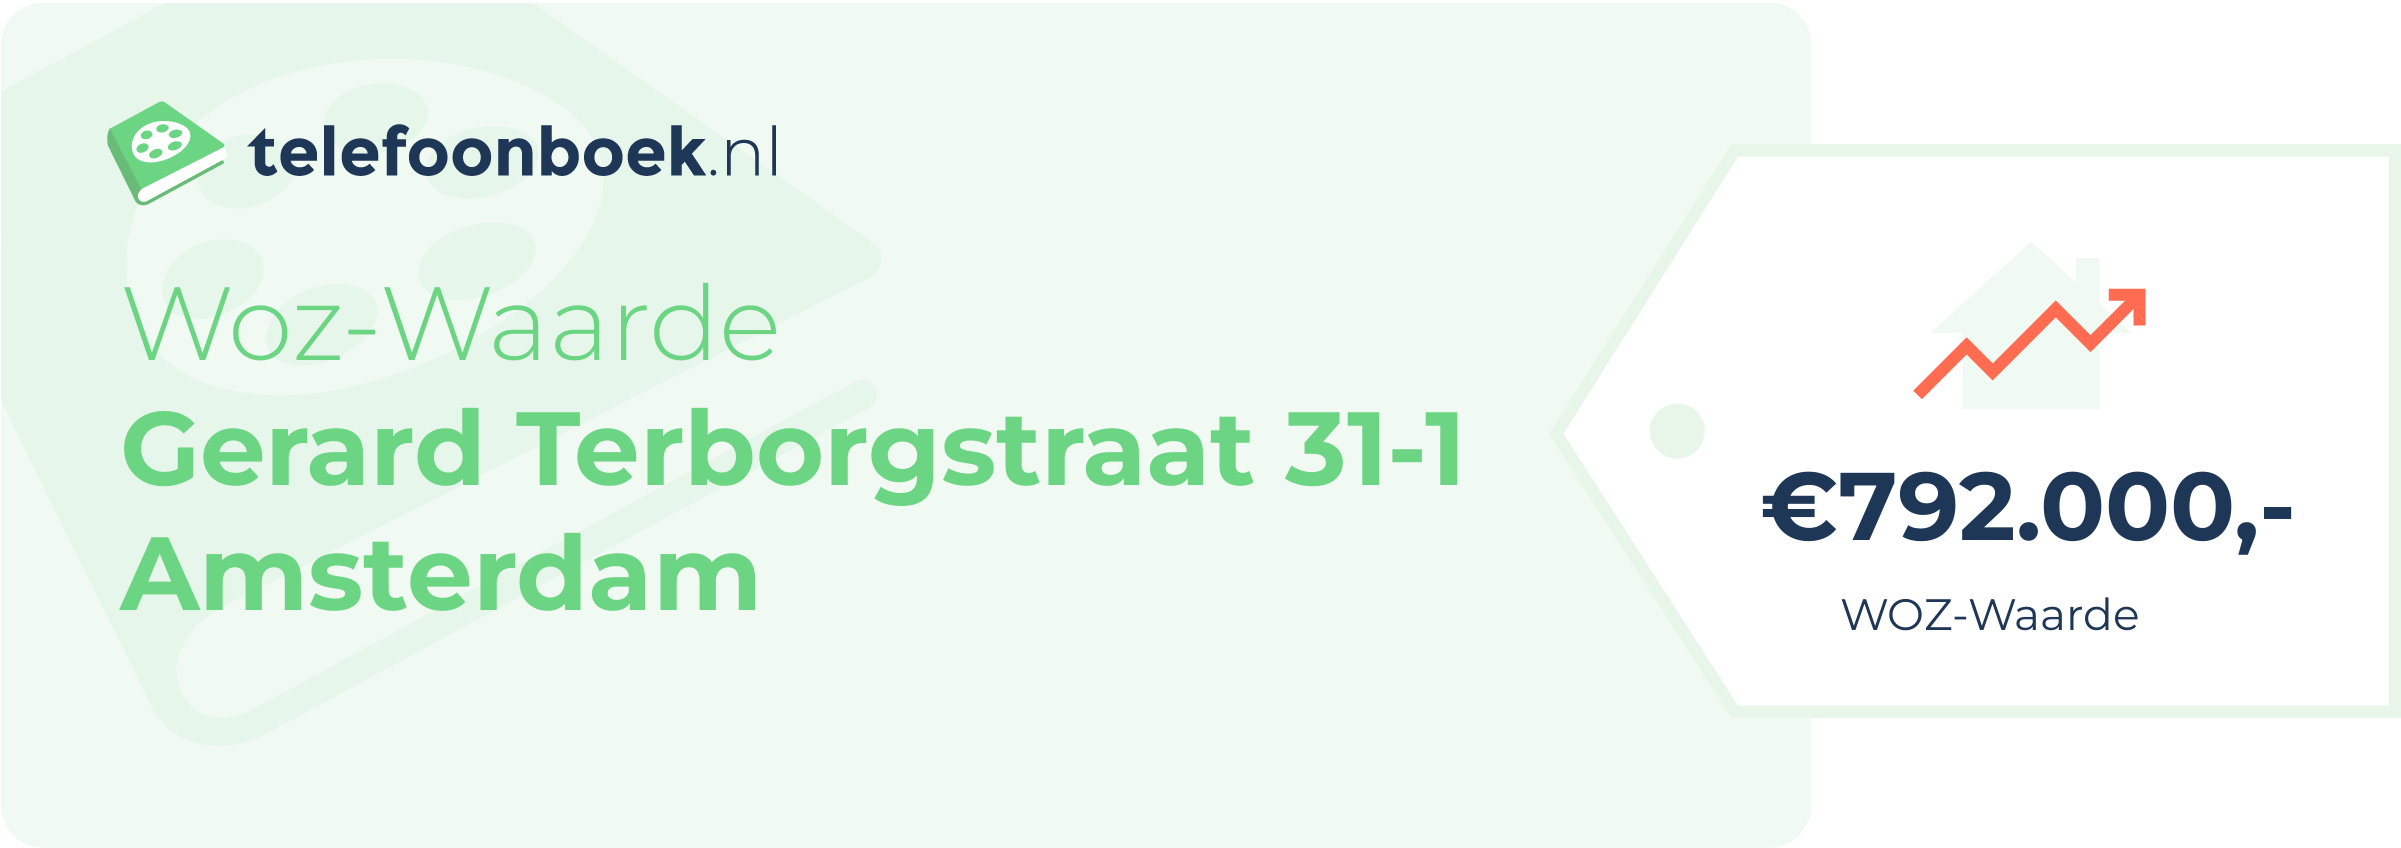 WOZ-waarde Gerard Terborgstraat 31-1 Amsterdam